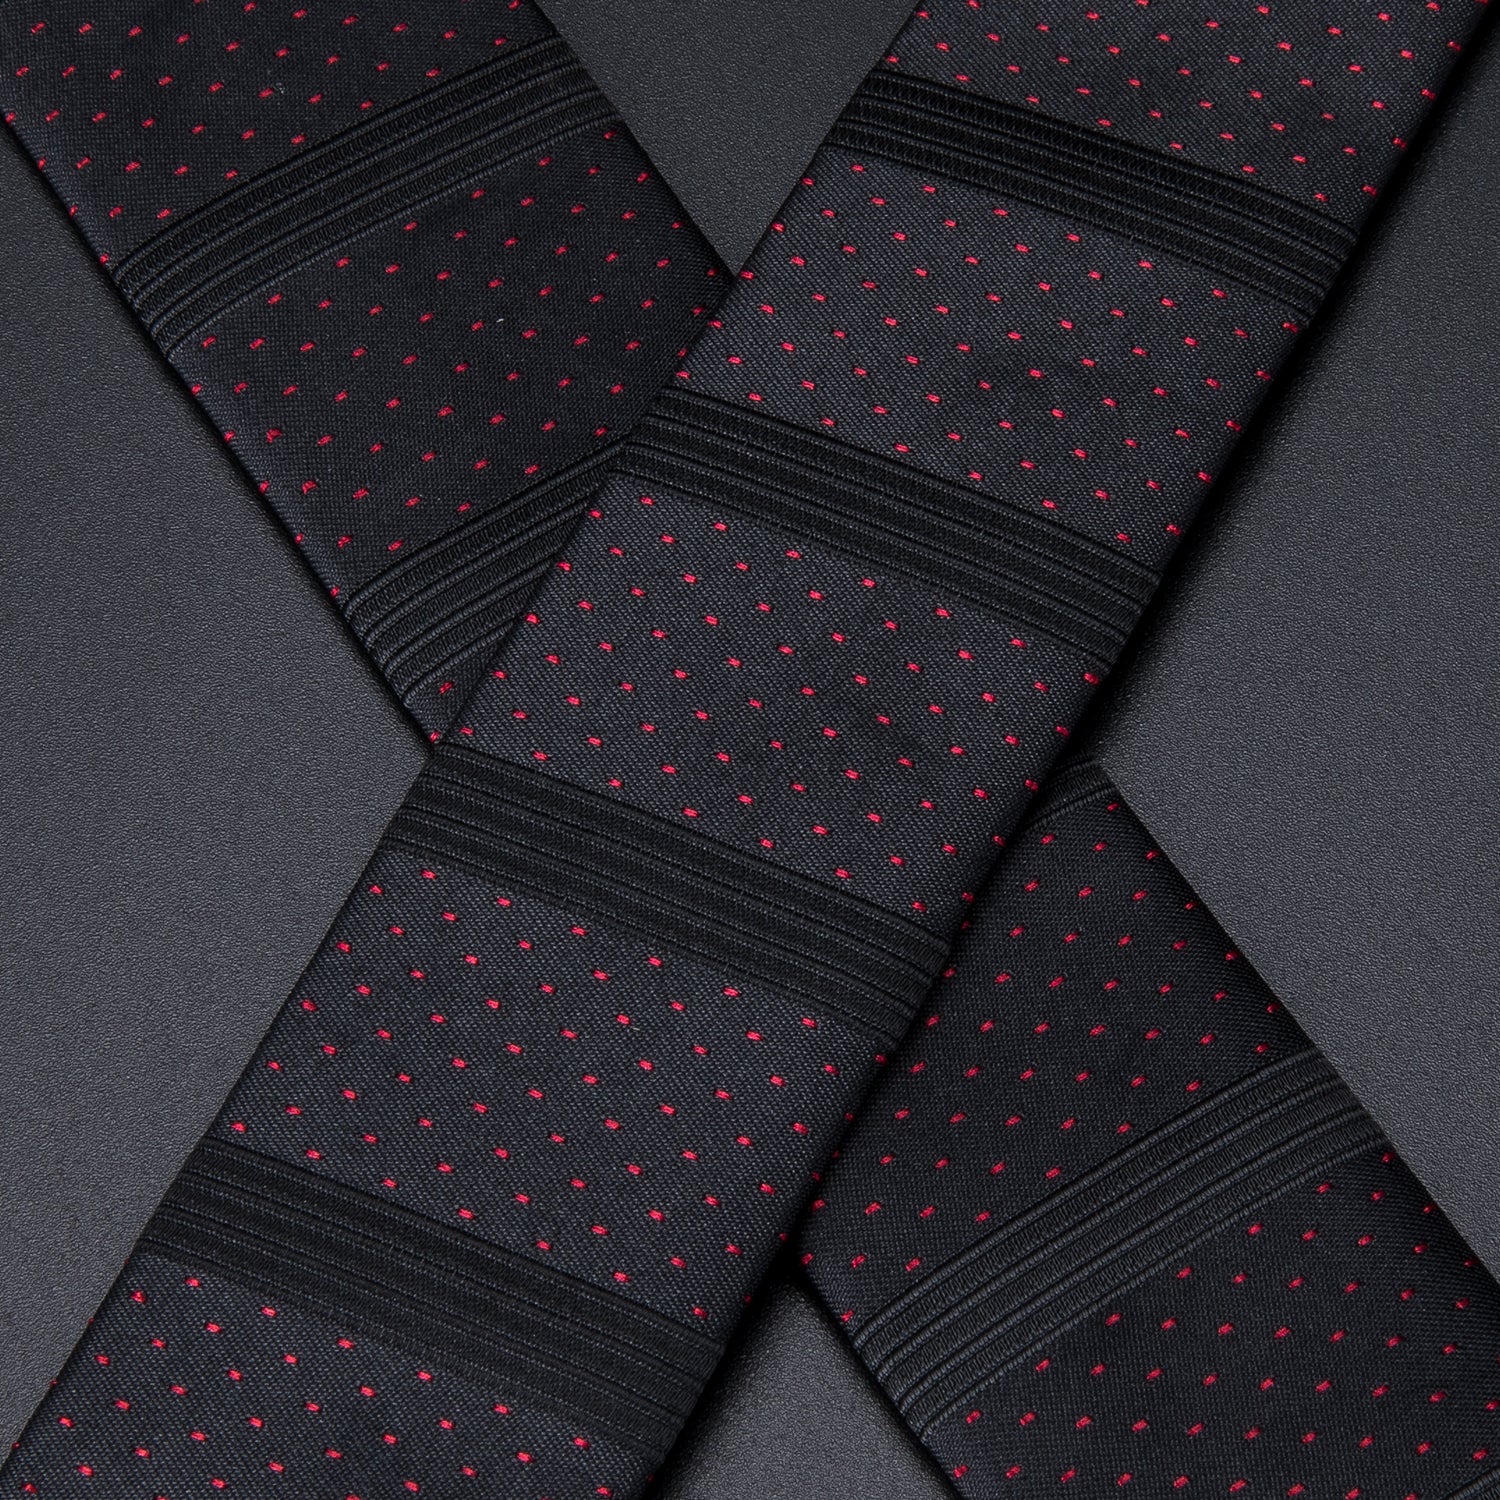 Red Dots Solid Black Suspender Bow Tie Handkerchief Cufflinks Set